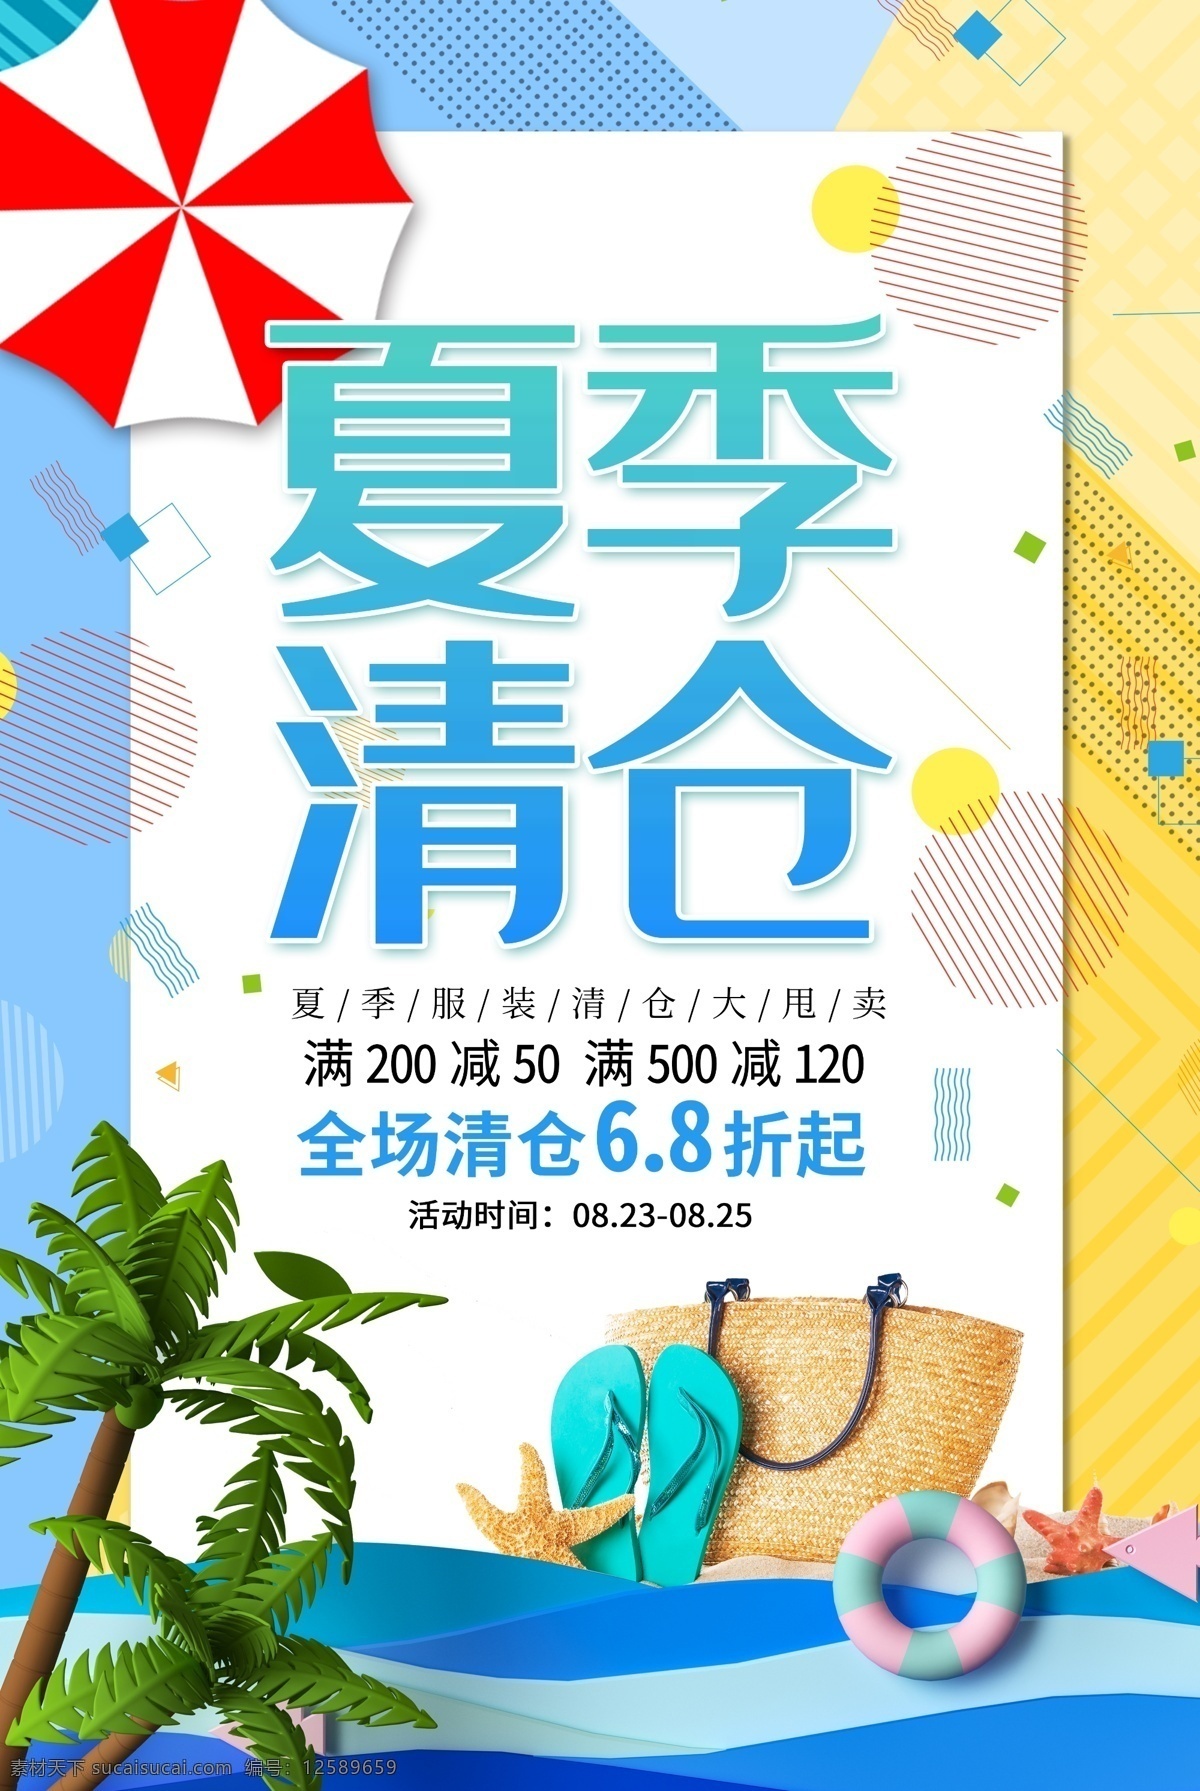 夏季清仓海报 夏季 清仓 海报 促销 销售 夏天 泳池 沙滩